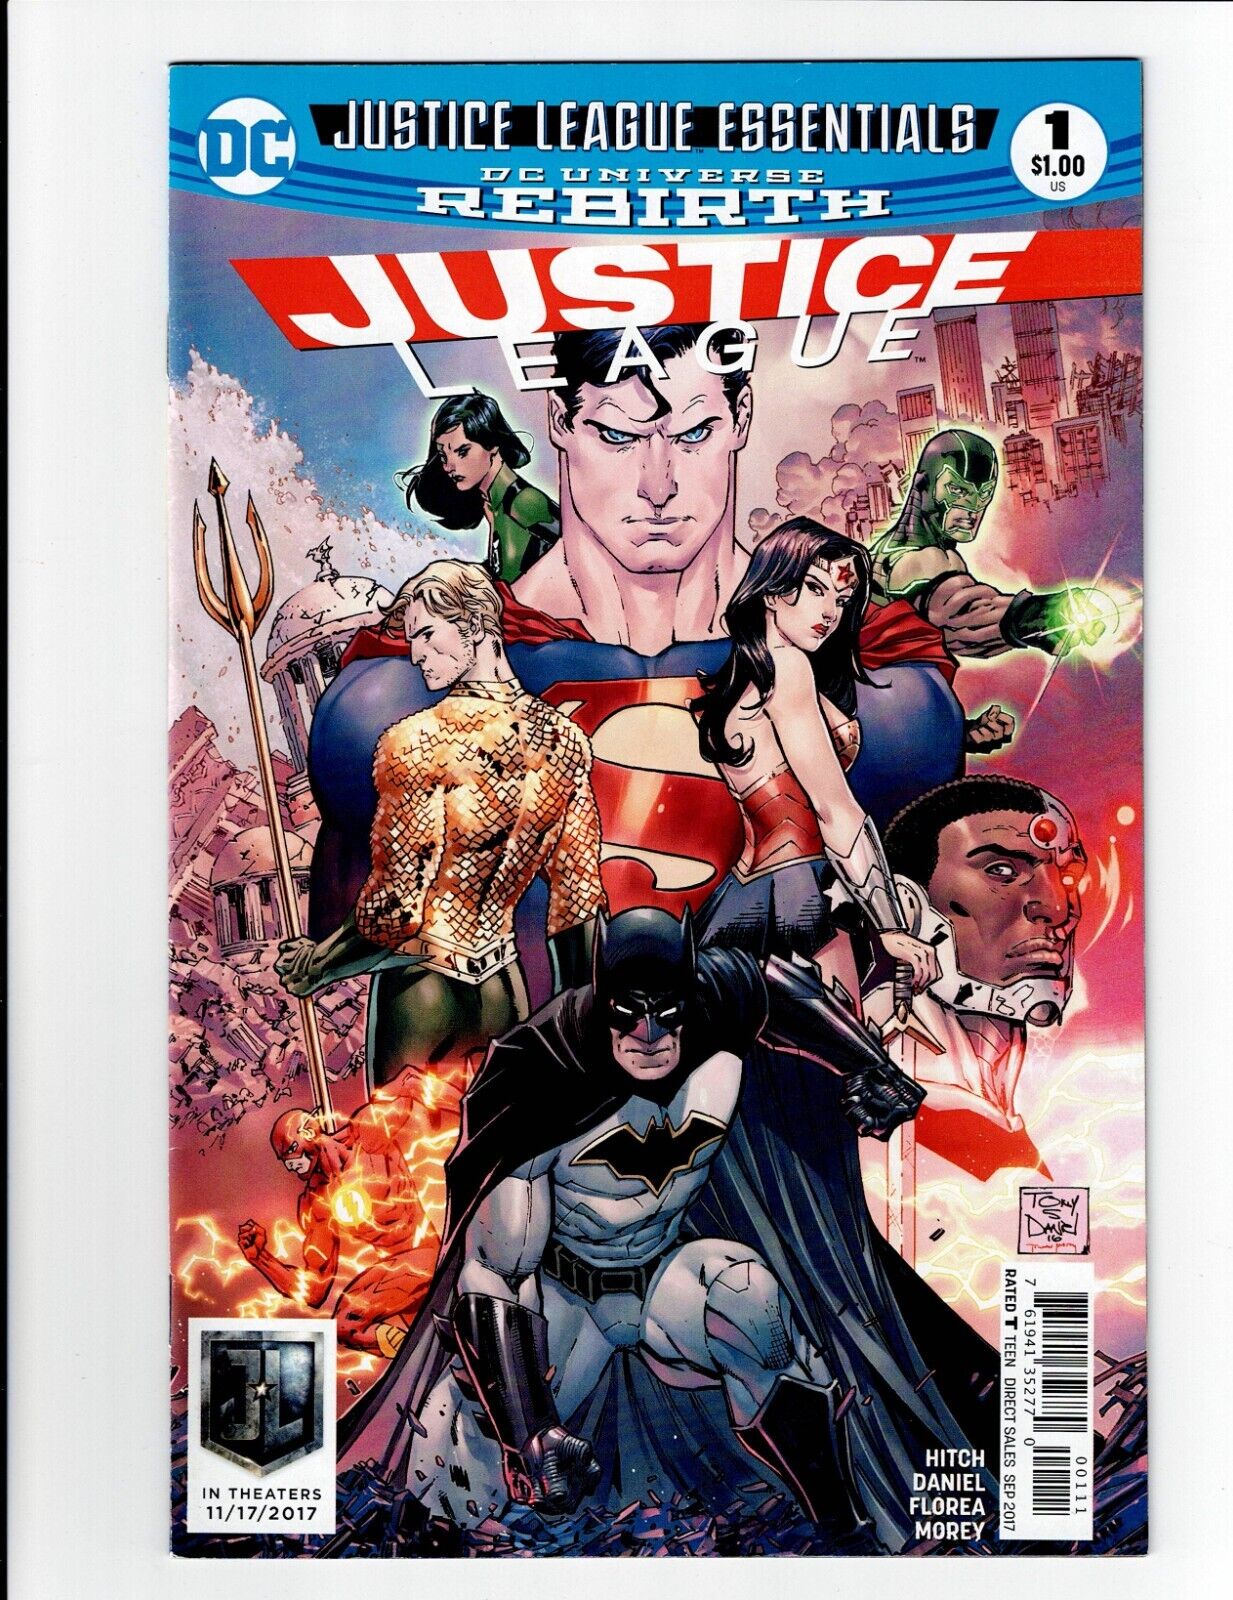 JUSTICE LEAGUE ESSENTIALS 1  Rebirth  DC Comics  VF+ condition.